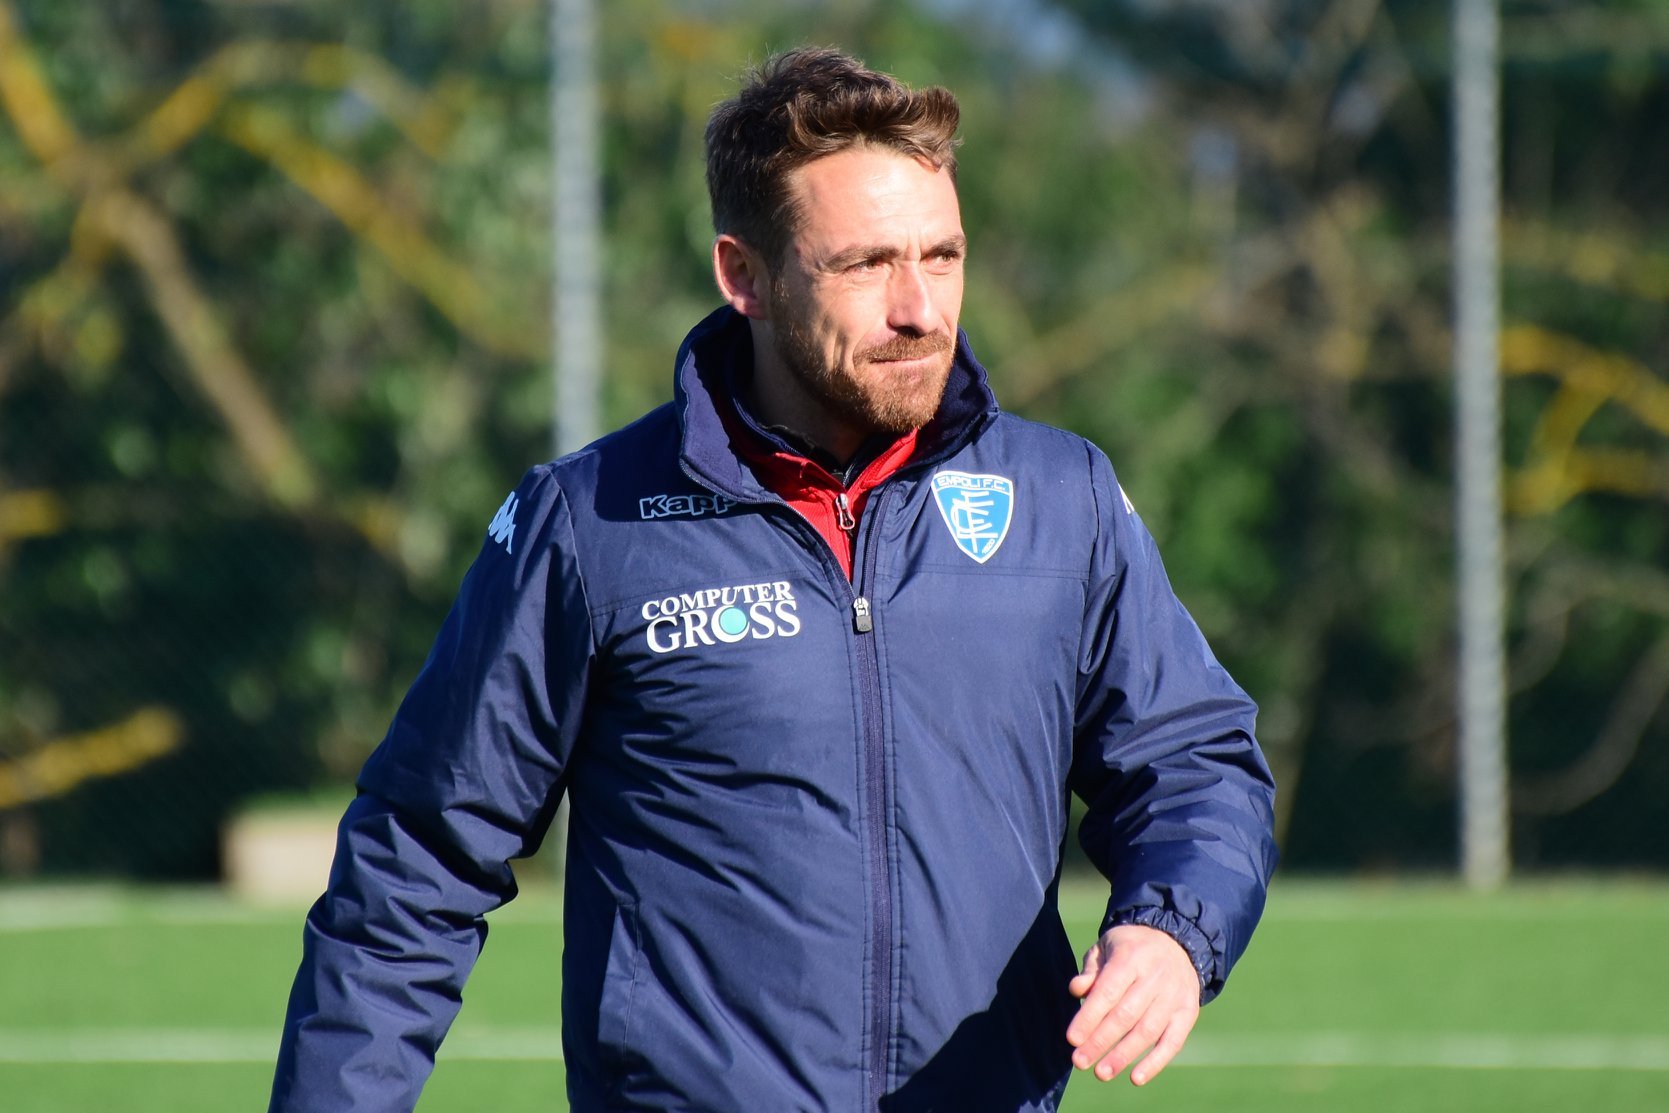 L’alessandrino Fabio Ulderici è il nuovo tecnico dell’Empoli Femminile in Serie A